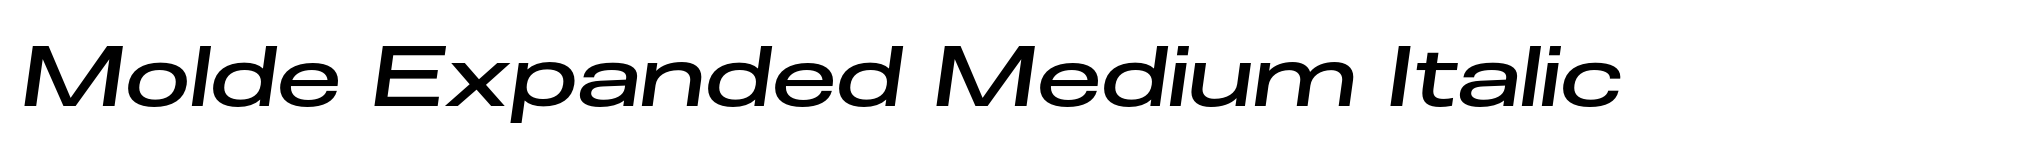 Molde Expanded Medium Italic image